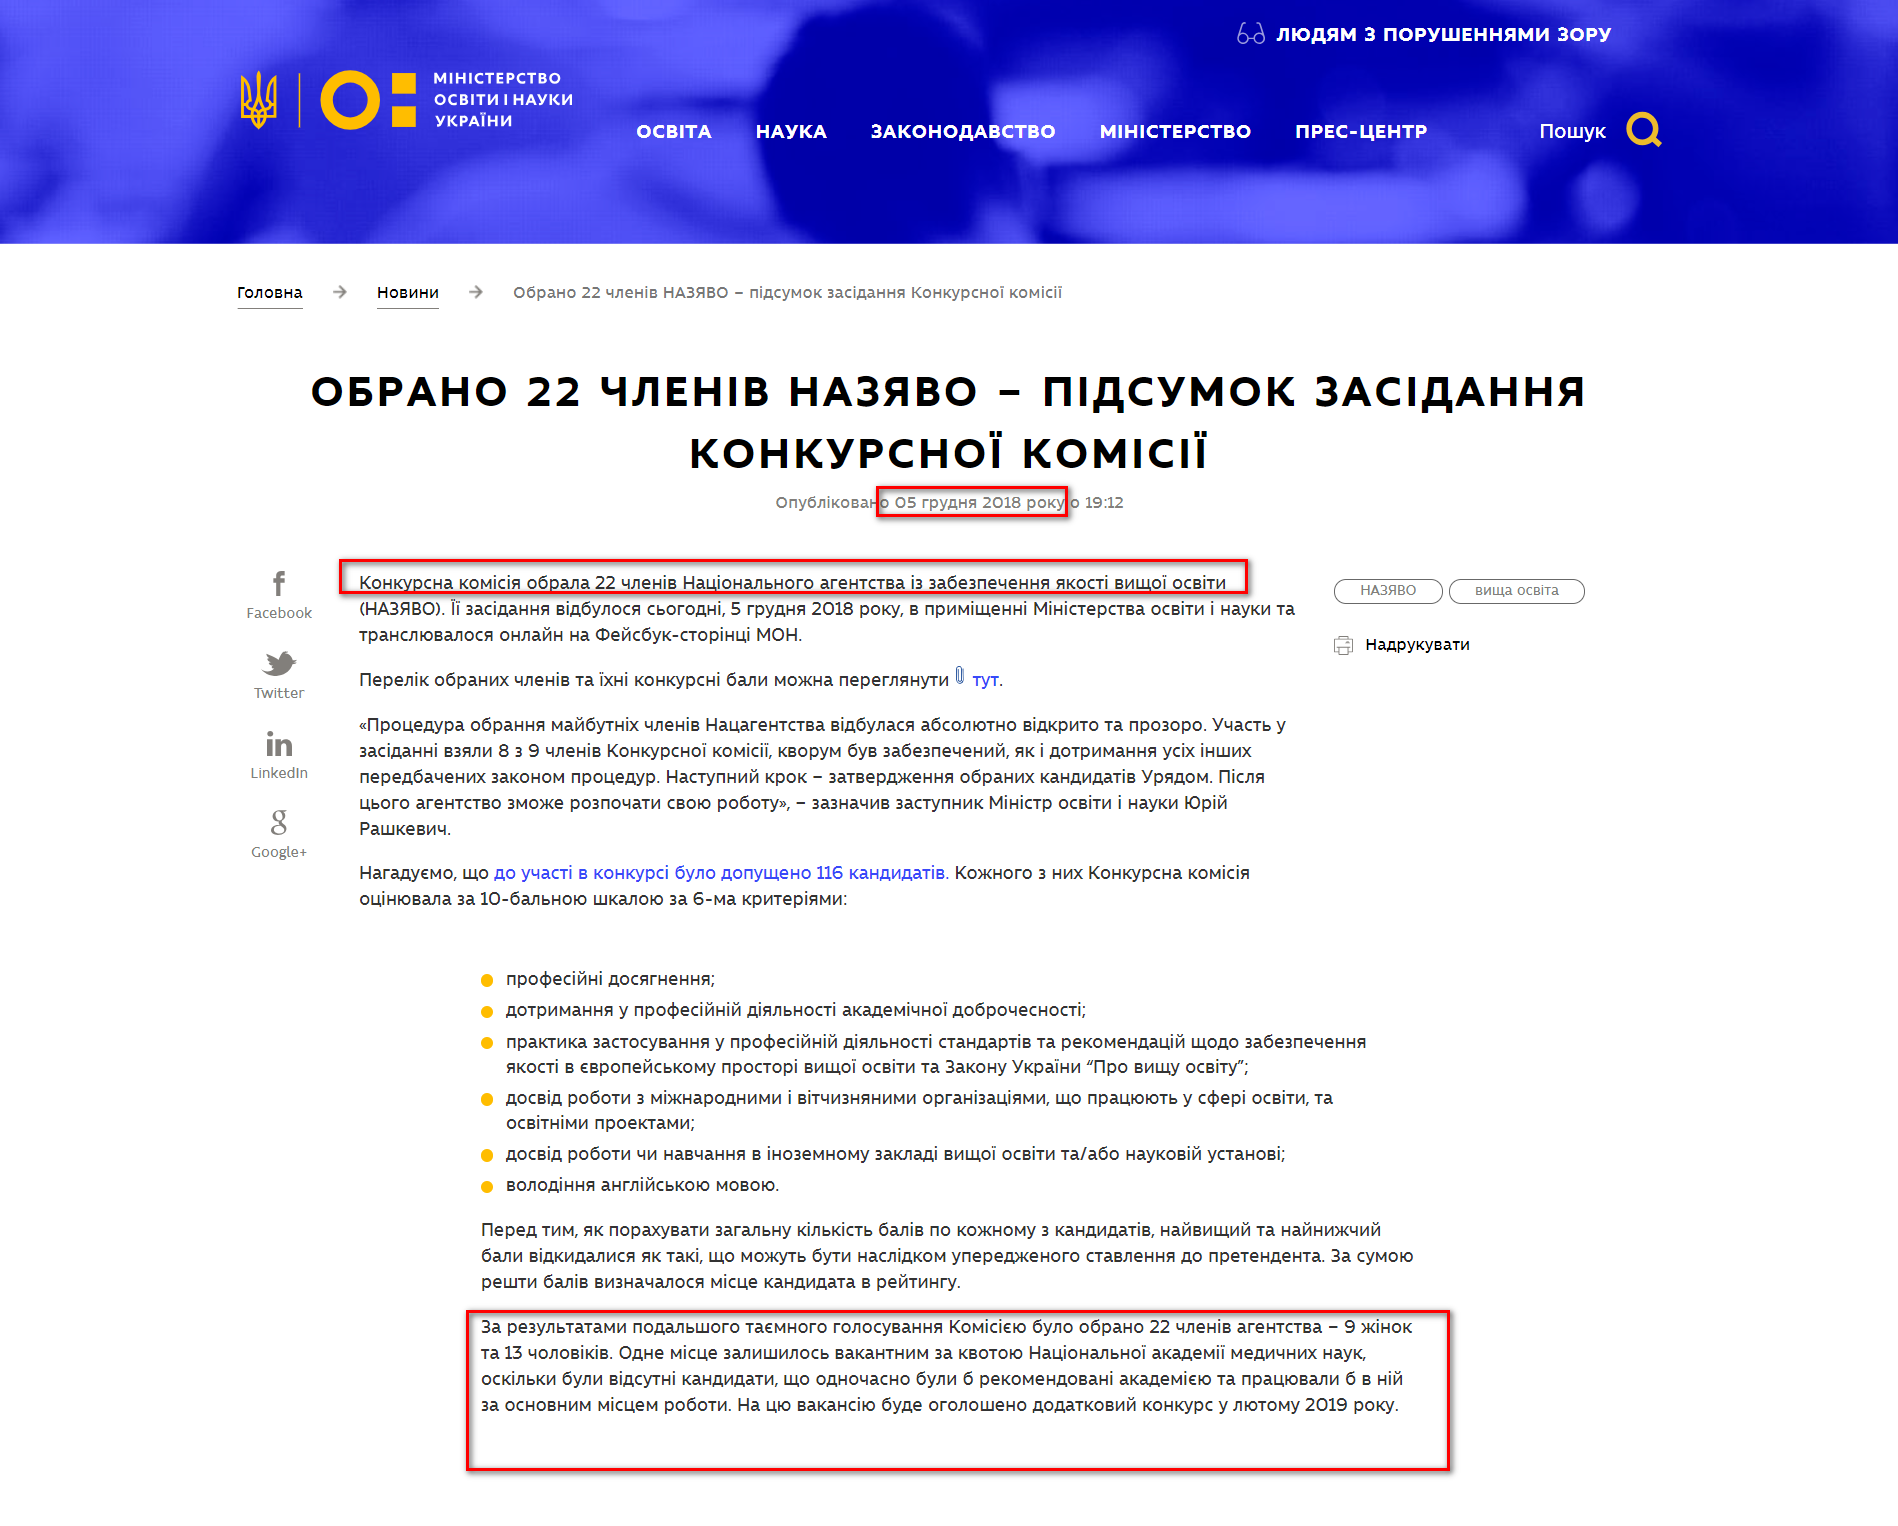 https://mon.gov.ua/ua/news/obrano-22-chleniv-nazyavo-pidsumok-zasidannya-konkursnoyi-komisiyi